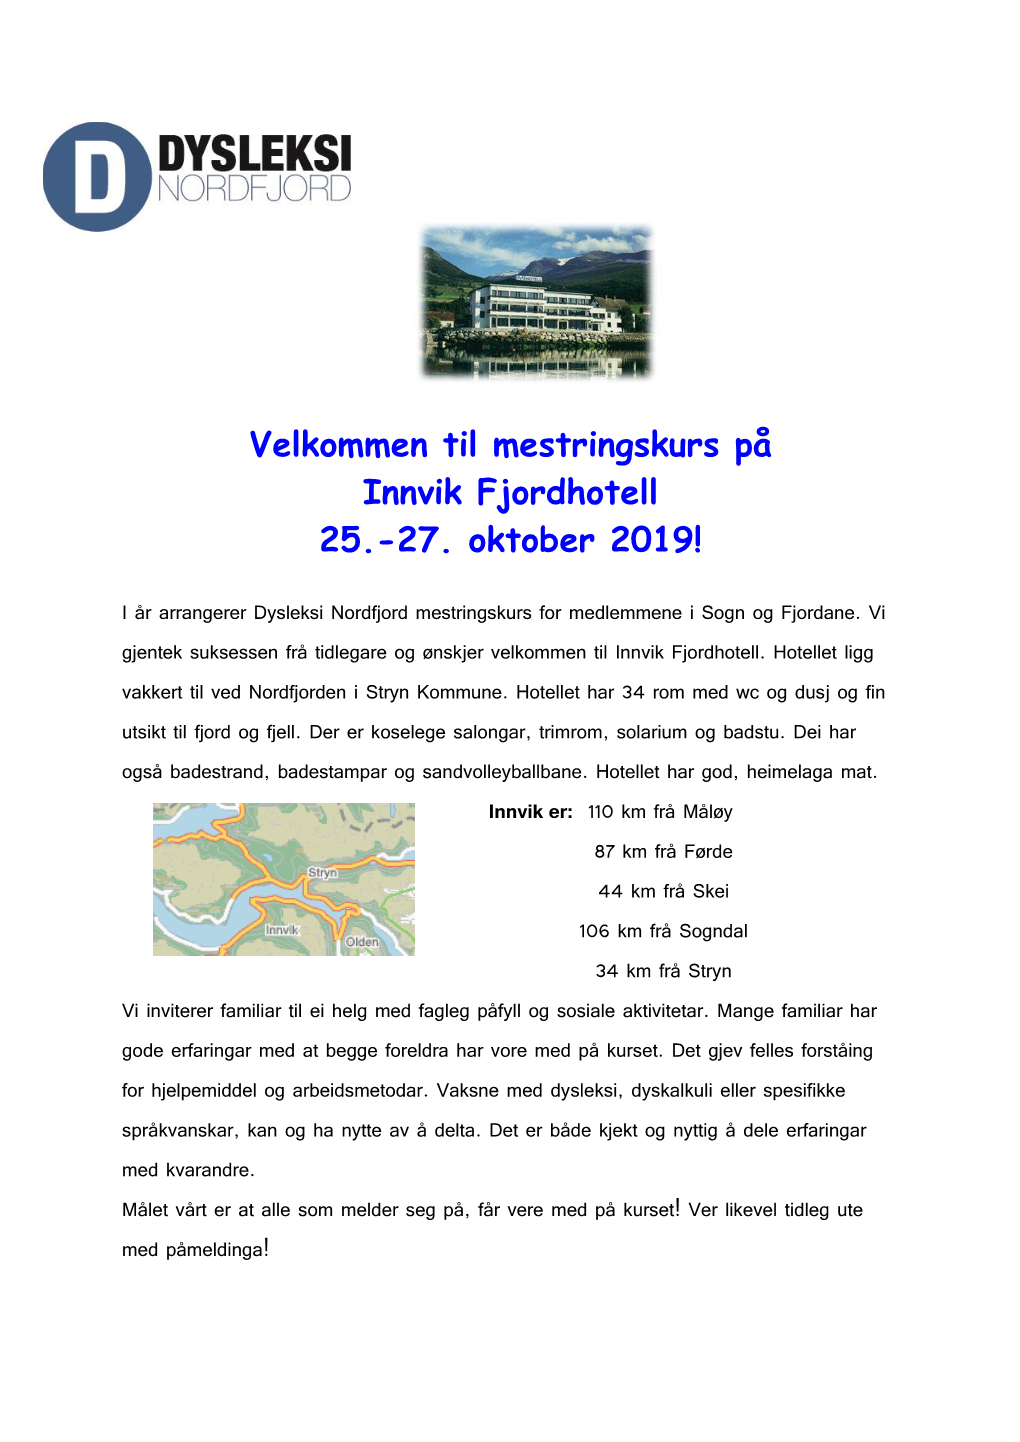 Velkommen Til Mestringskurs På Innvik Fjordhotell 25.-27. Oktober 2019!